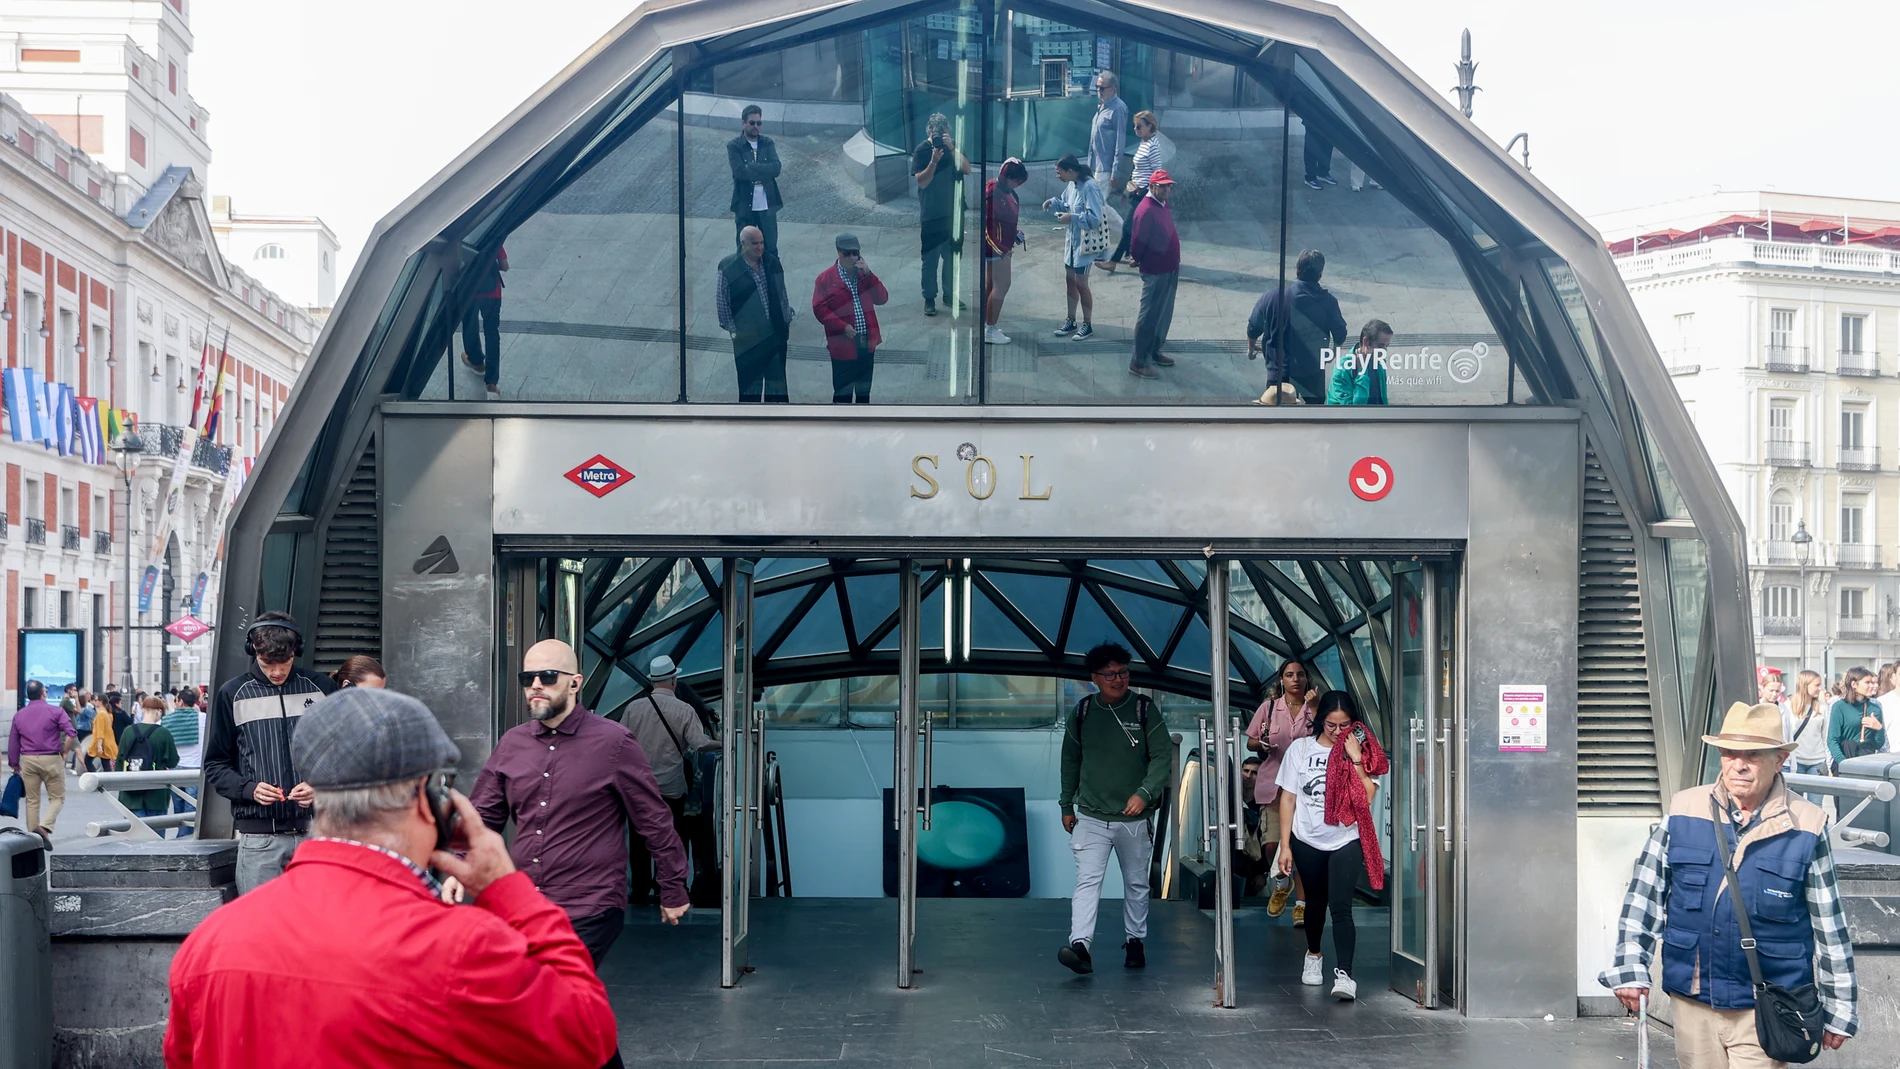 La estación de Sol de Metro y Cercanías estará cerrada viernes y sábado de 18 a 21 horas ante la previsión de afluencia